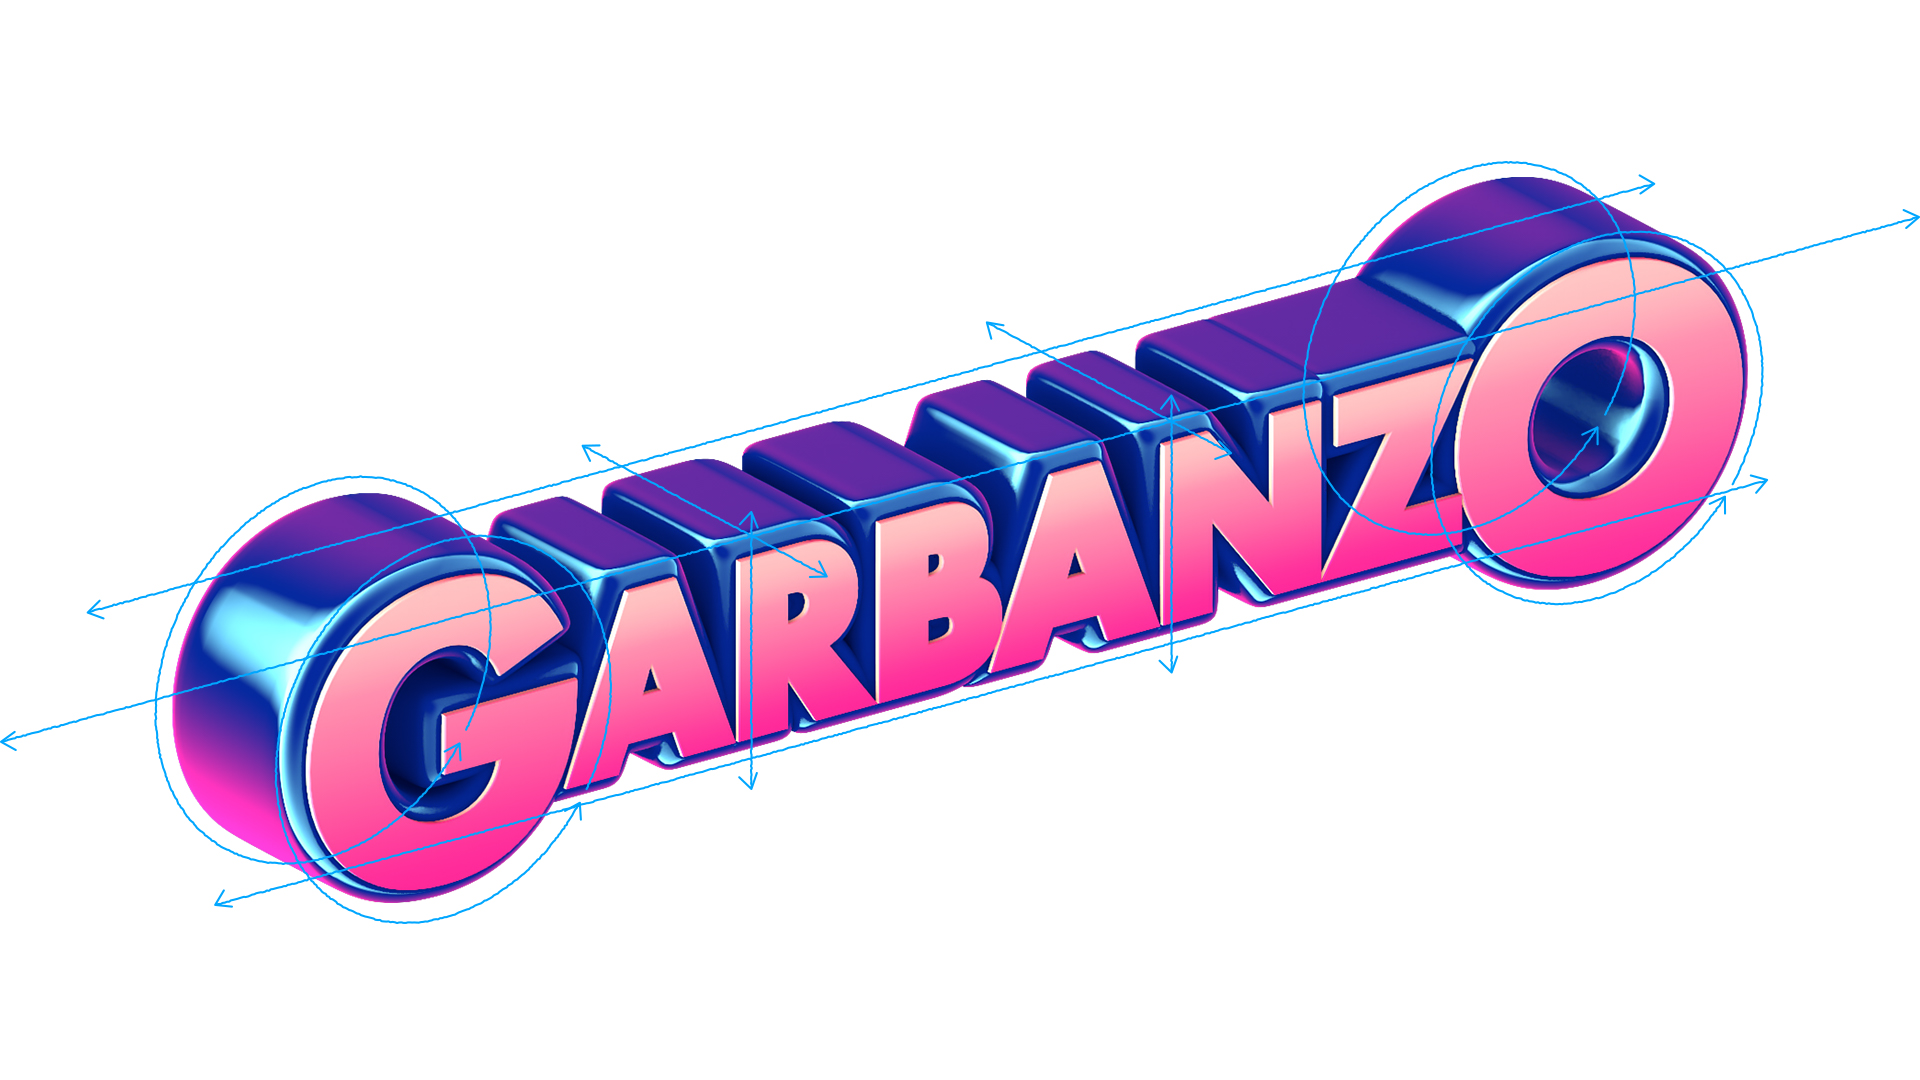 Garbanzo Rebrand 379